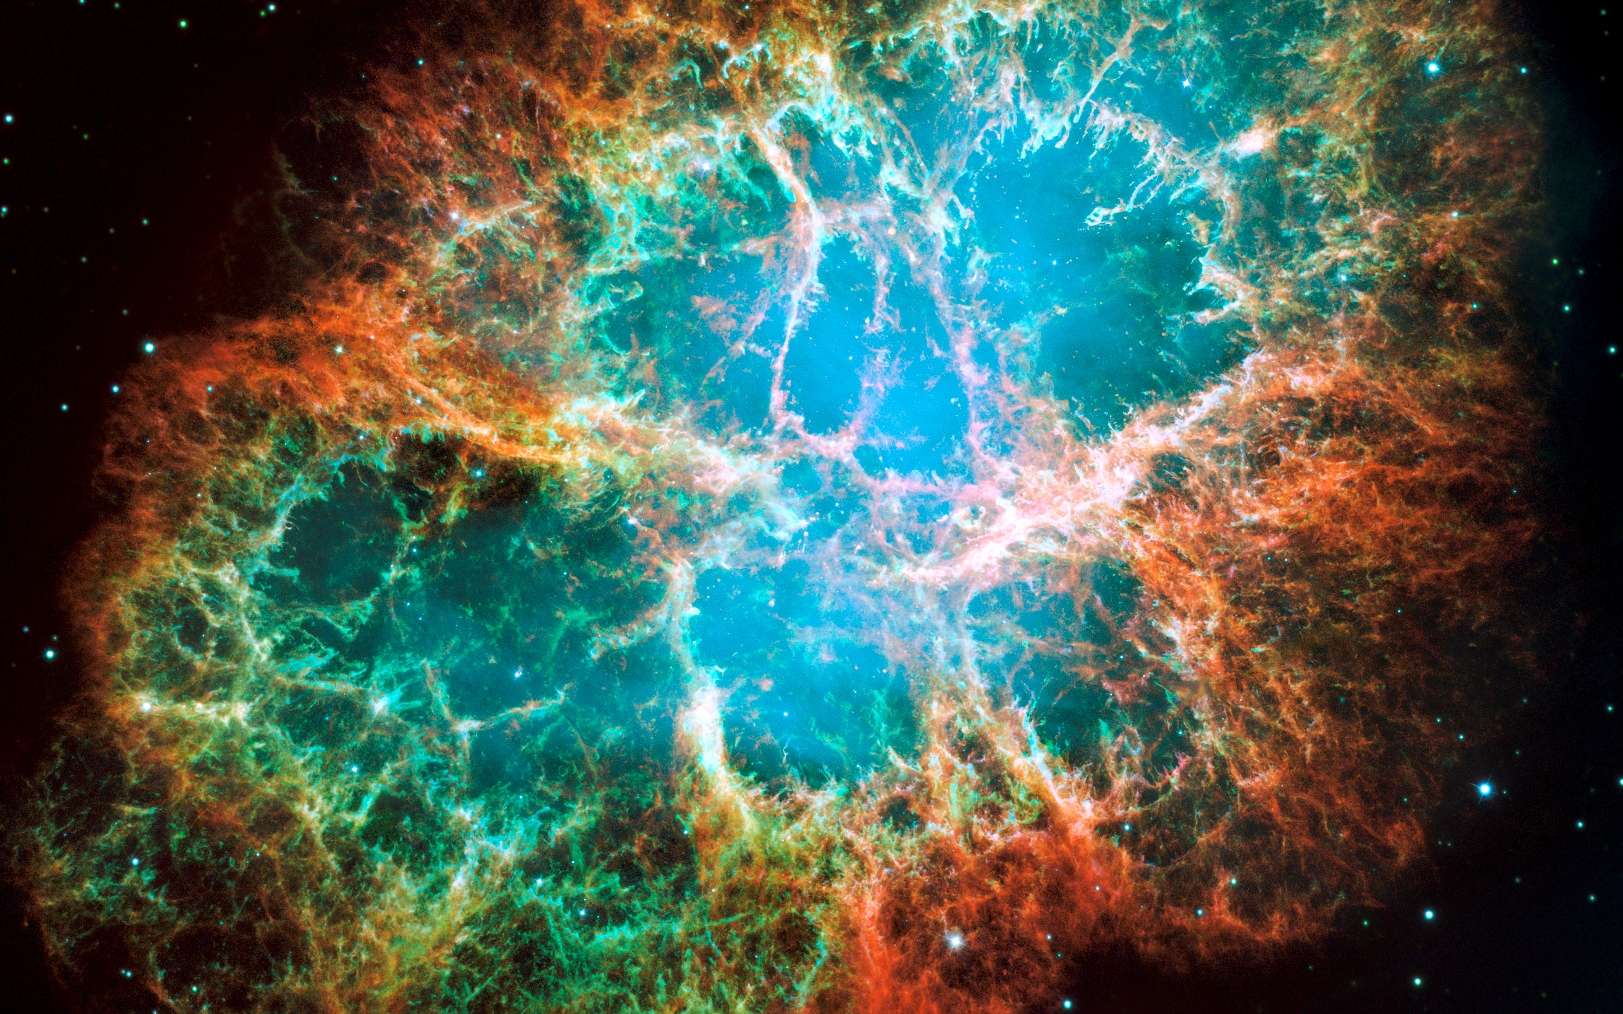 La nébuleuse du crabe, un nuage de débris en expansion de six années-lumière de diamètre provenant d'une explosion de supernova, héberge une étoile à neutrons tournant sur elle-même 30 fois par seconde et qui fait partie des pulsars les plus brillants du ciel aux longueurs d'onde des rayons X et radio. Cette composition d'images du télescope spatial Hubble révèle différents gaz expulsés lors de l'explosion: le bleu révèle l'oxygène neutre, le vert montre le soufre mono-ionisé et le rouge indique l'oxygène doublement ionisé. © Nasa, ESA, J. Hester et A. Loll (Arizona State University)